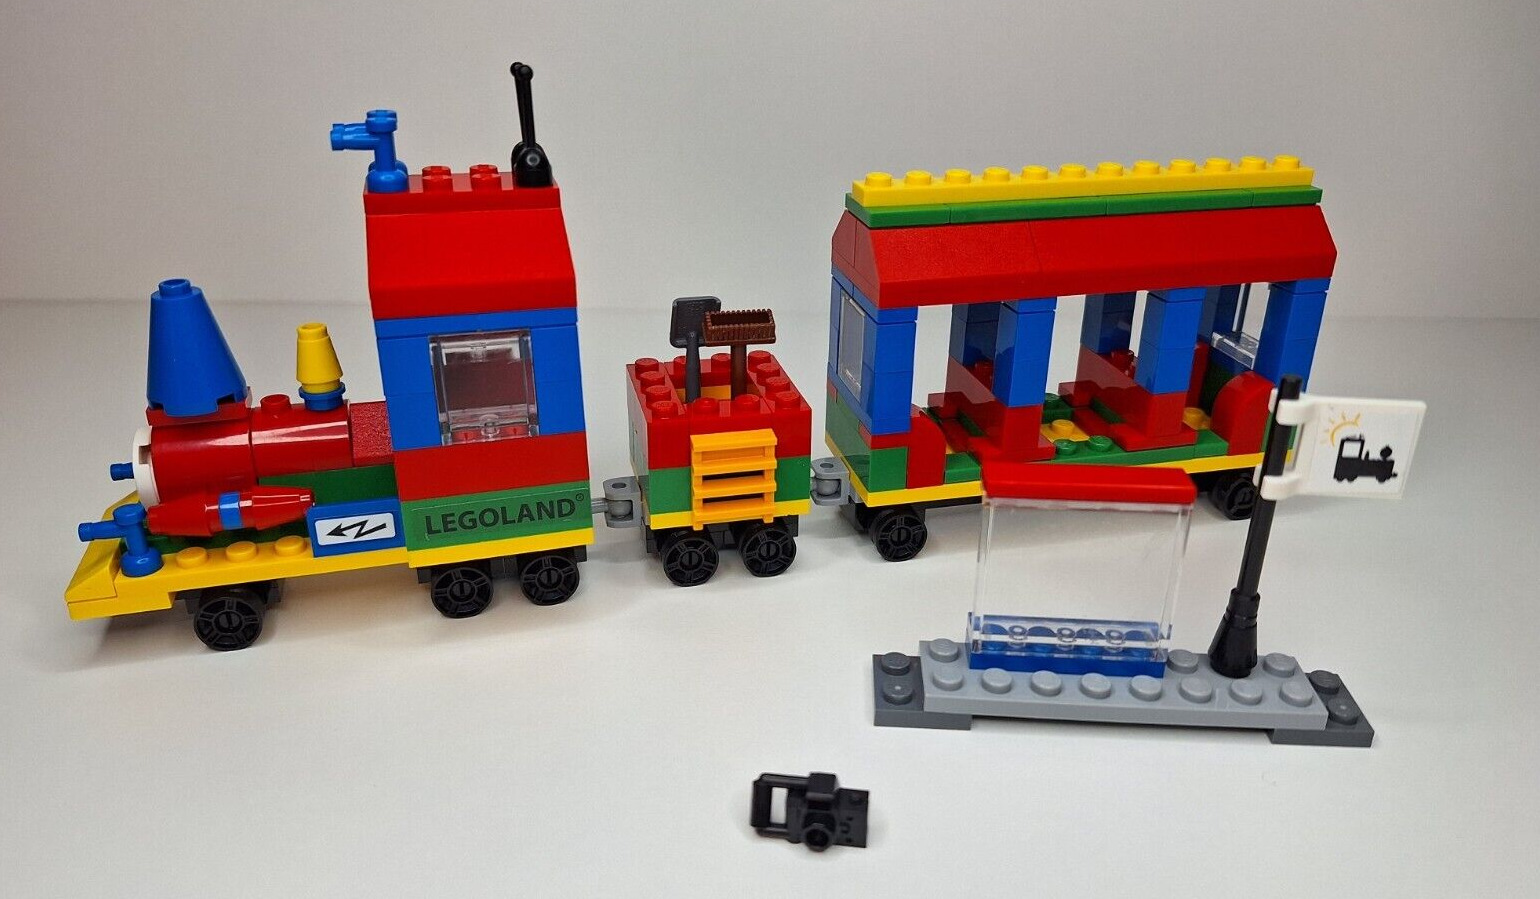 LEGO Promotional: LEGOLAND Train (40166) No Minifigures or Instructions